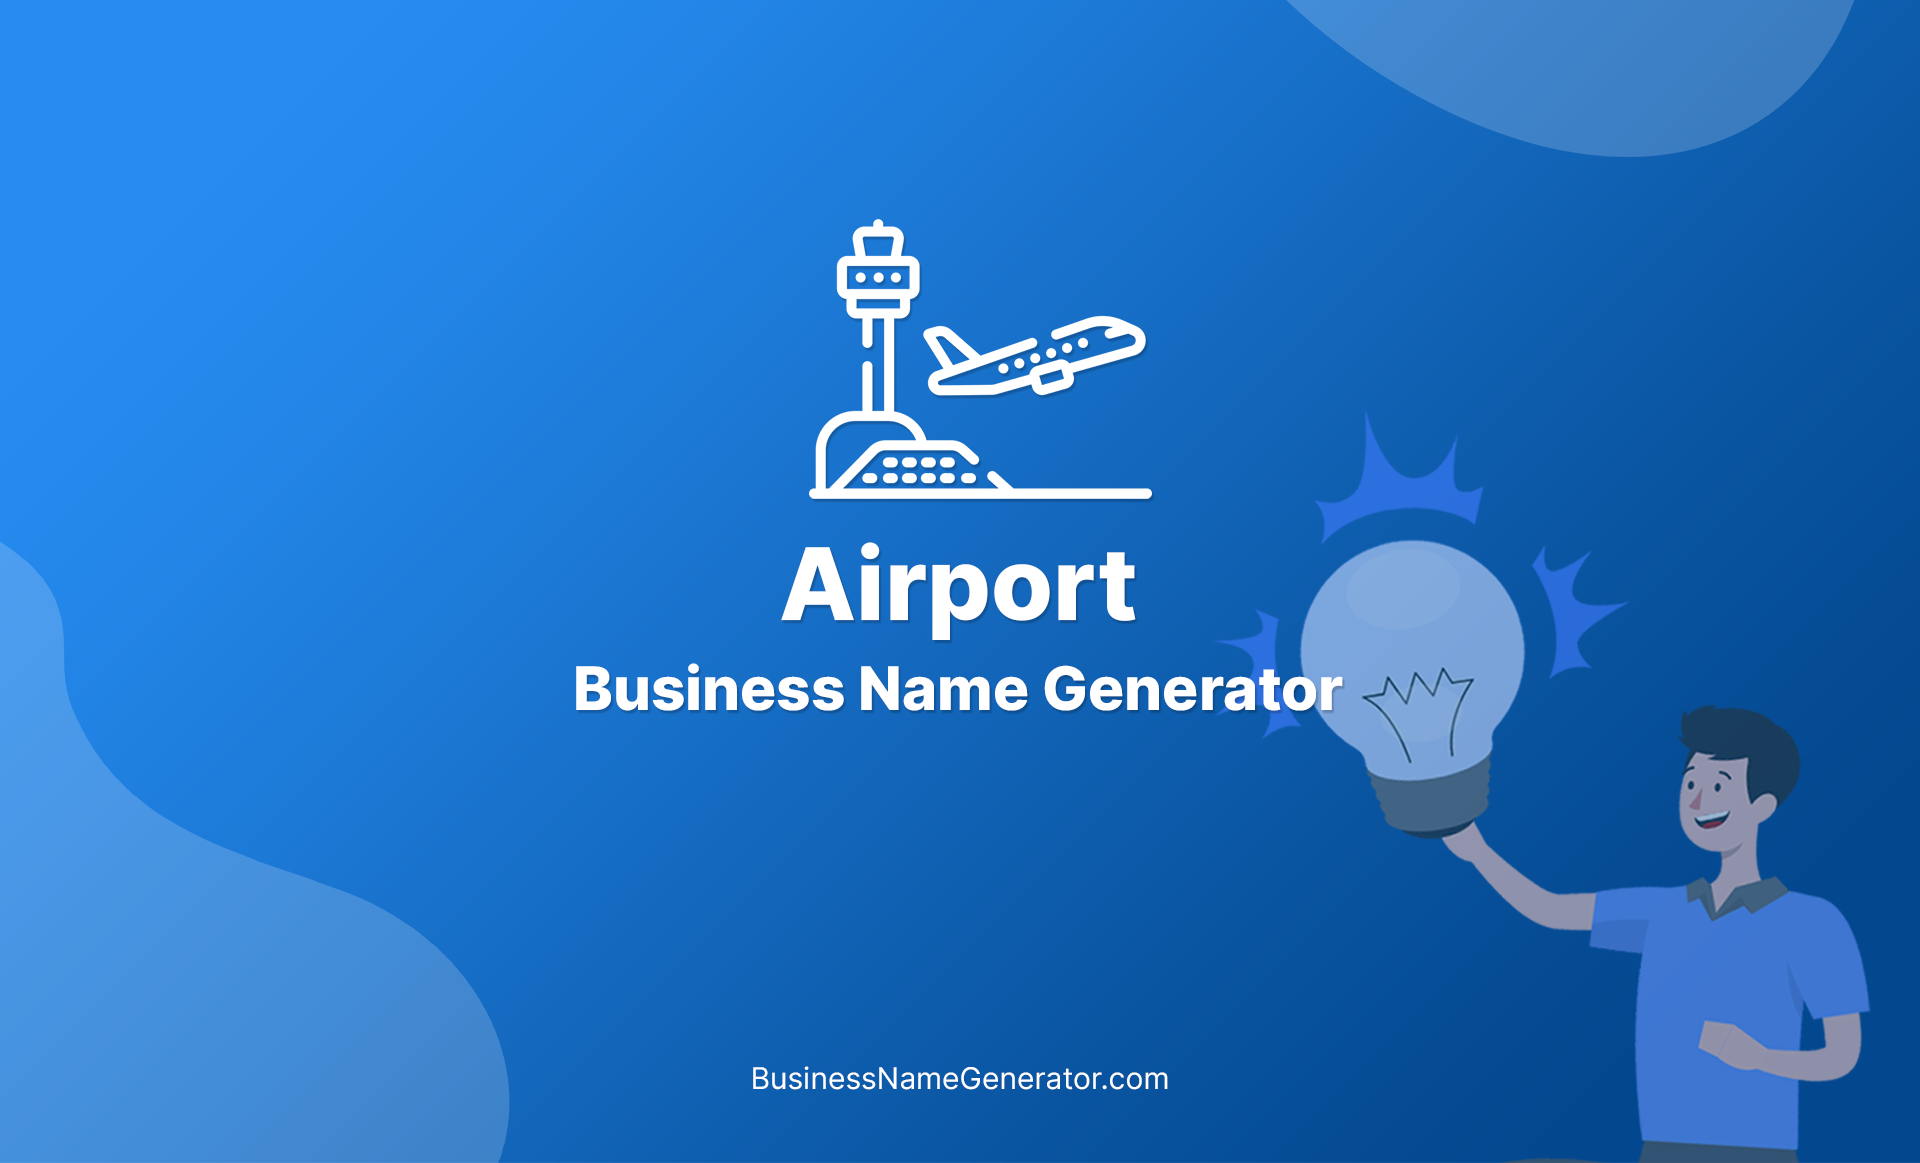 Airport Business Name Generator